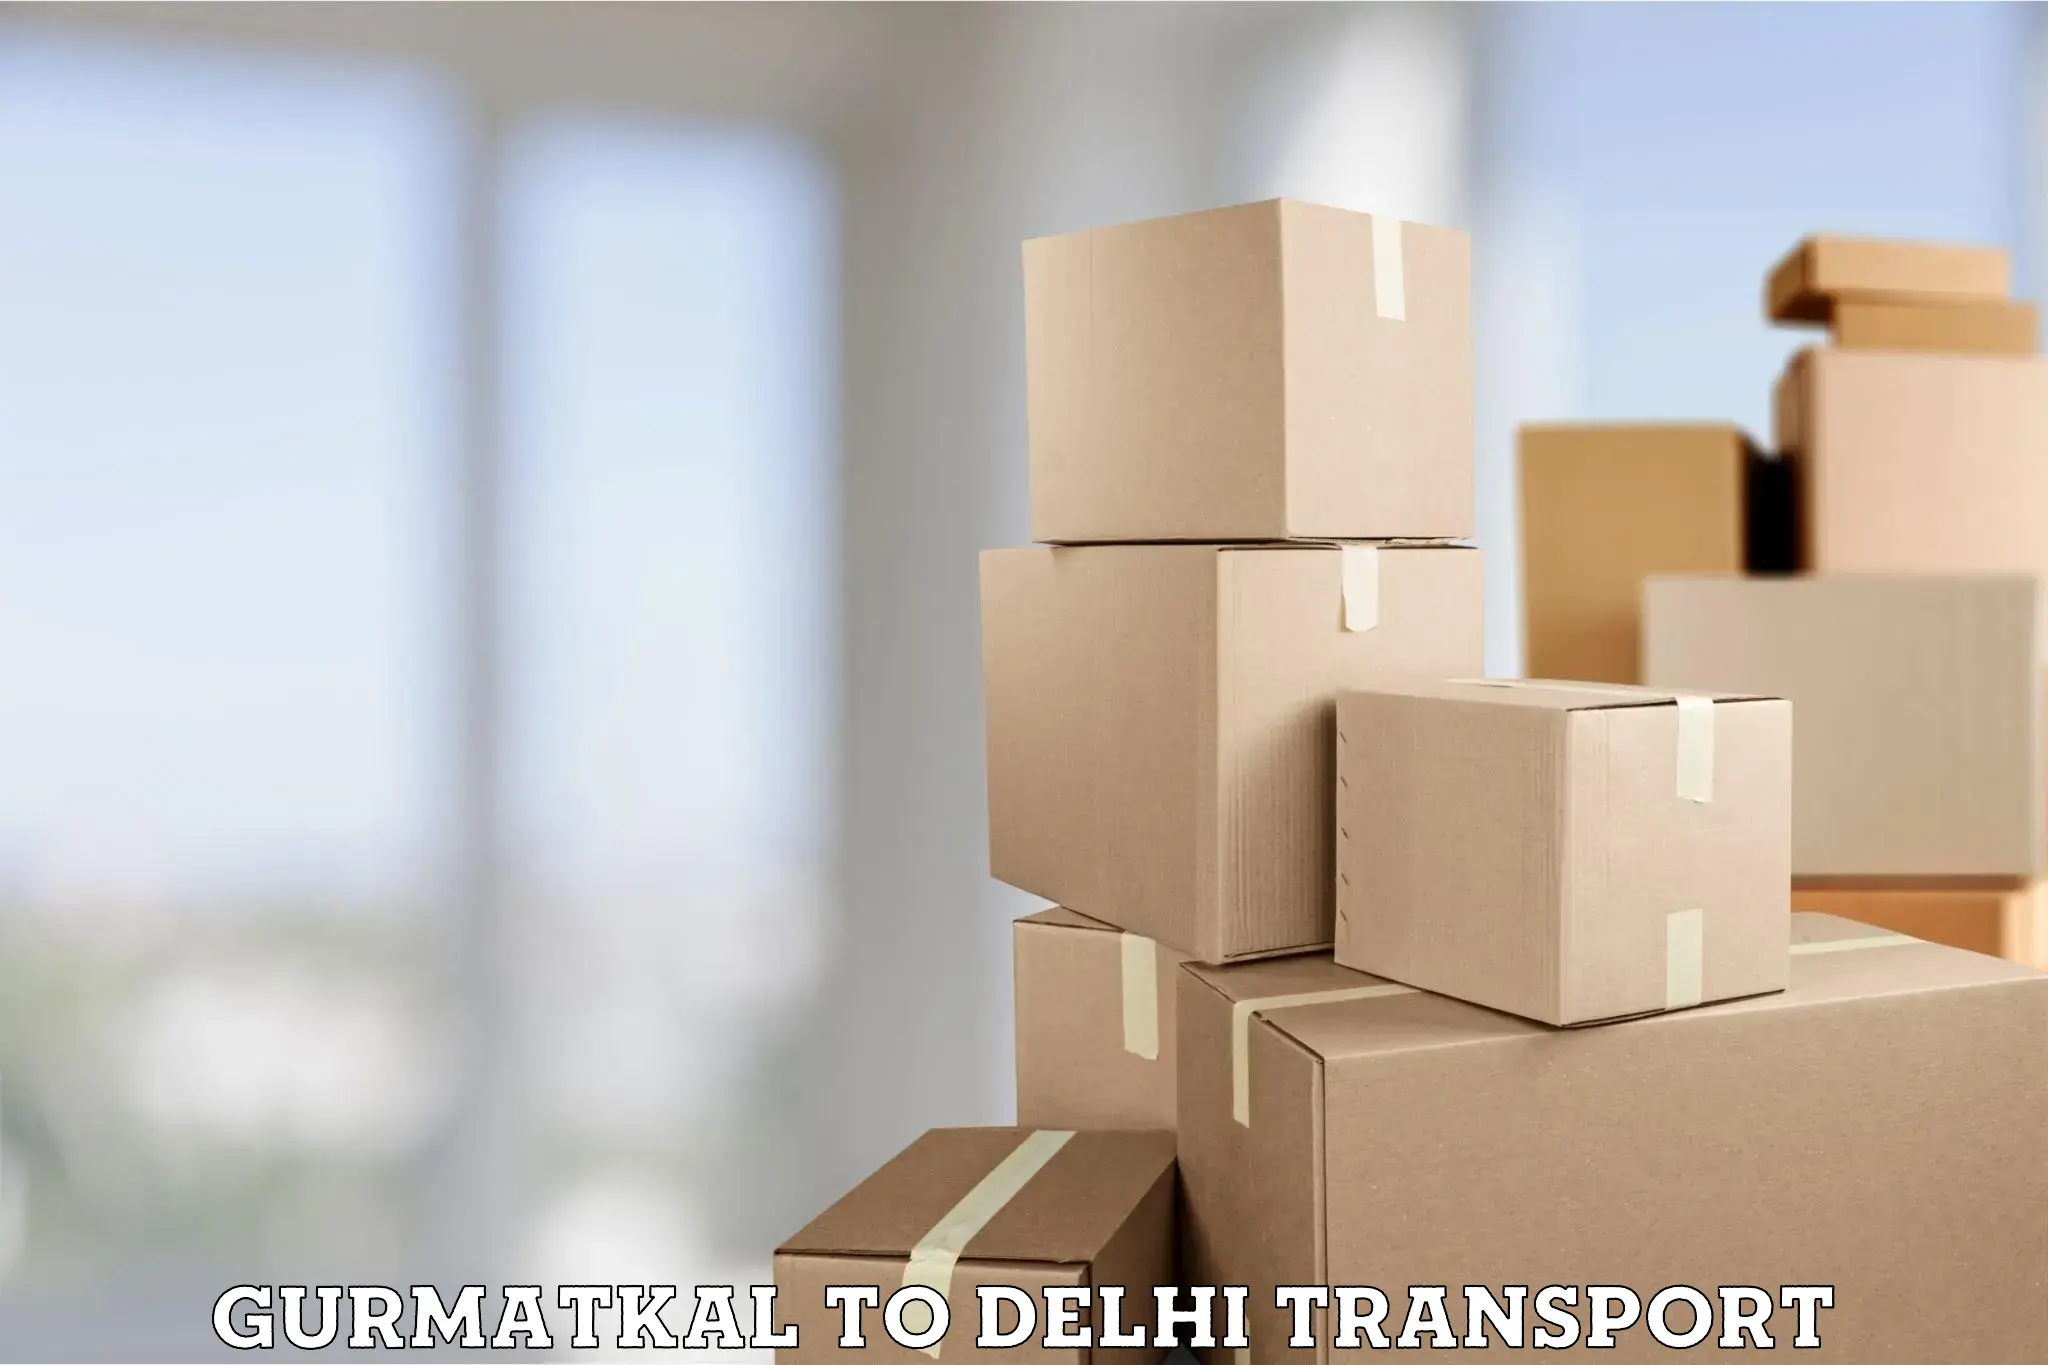 Transport in sharing Gurmatkal to University of Delhi